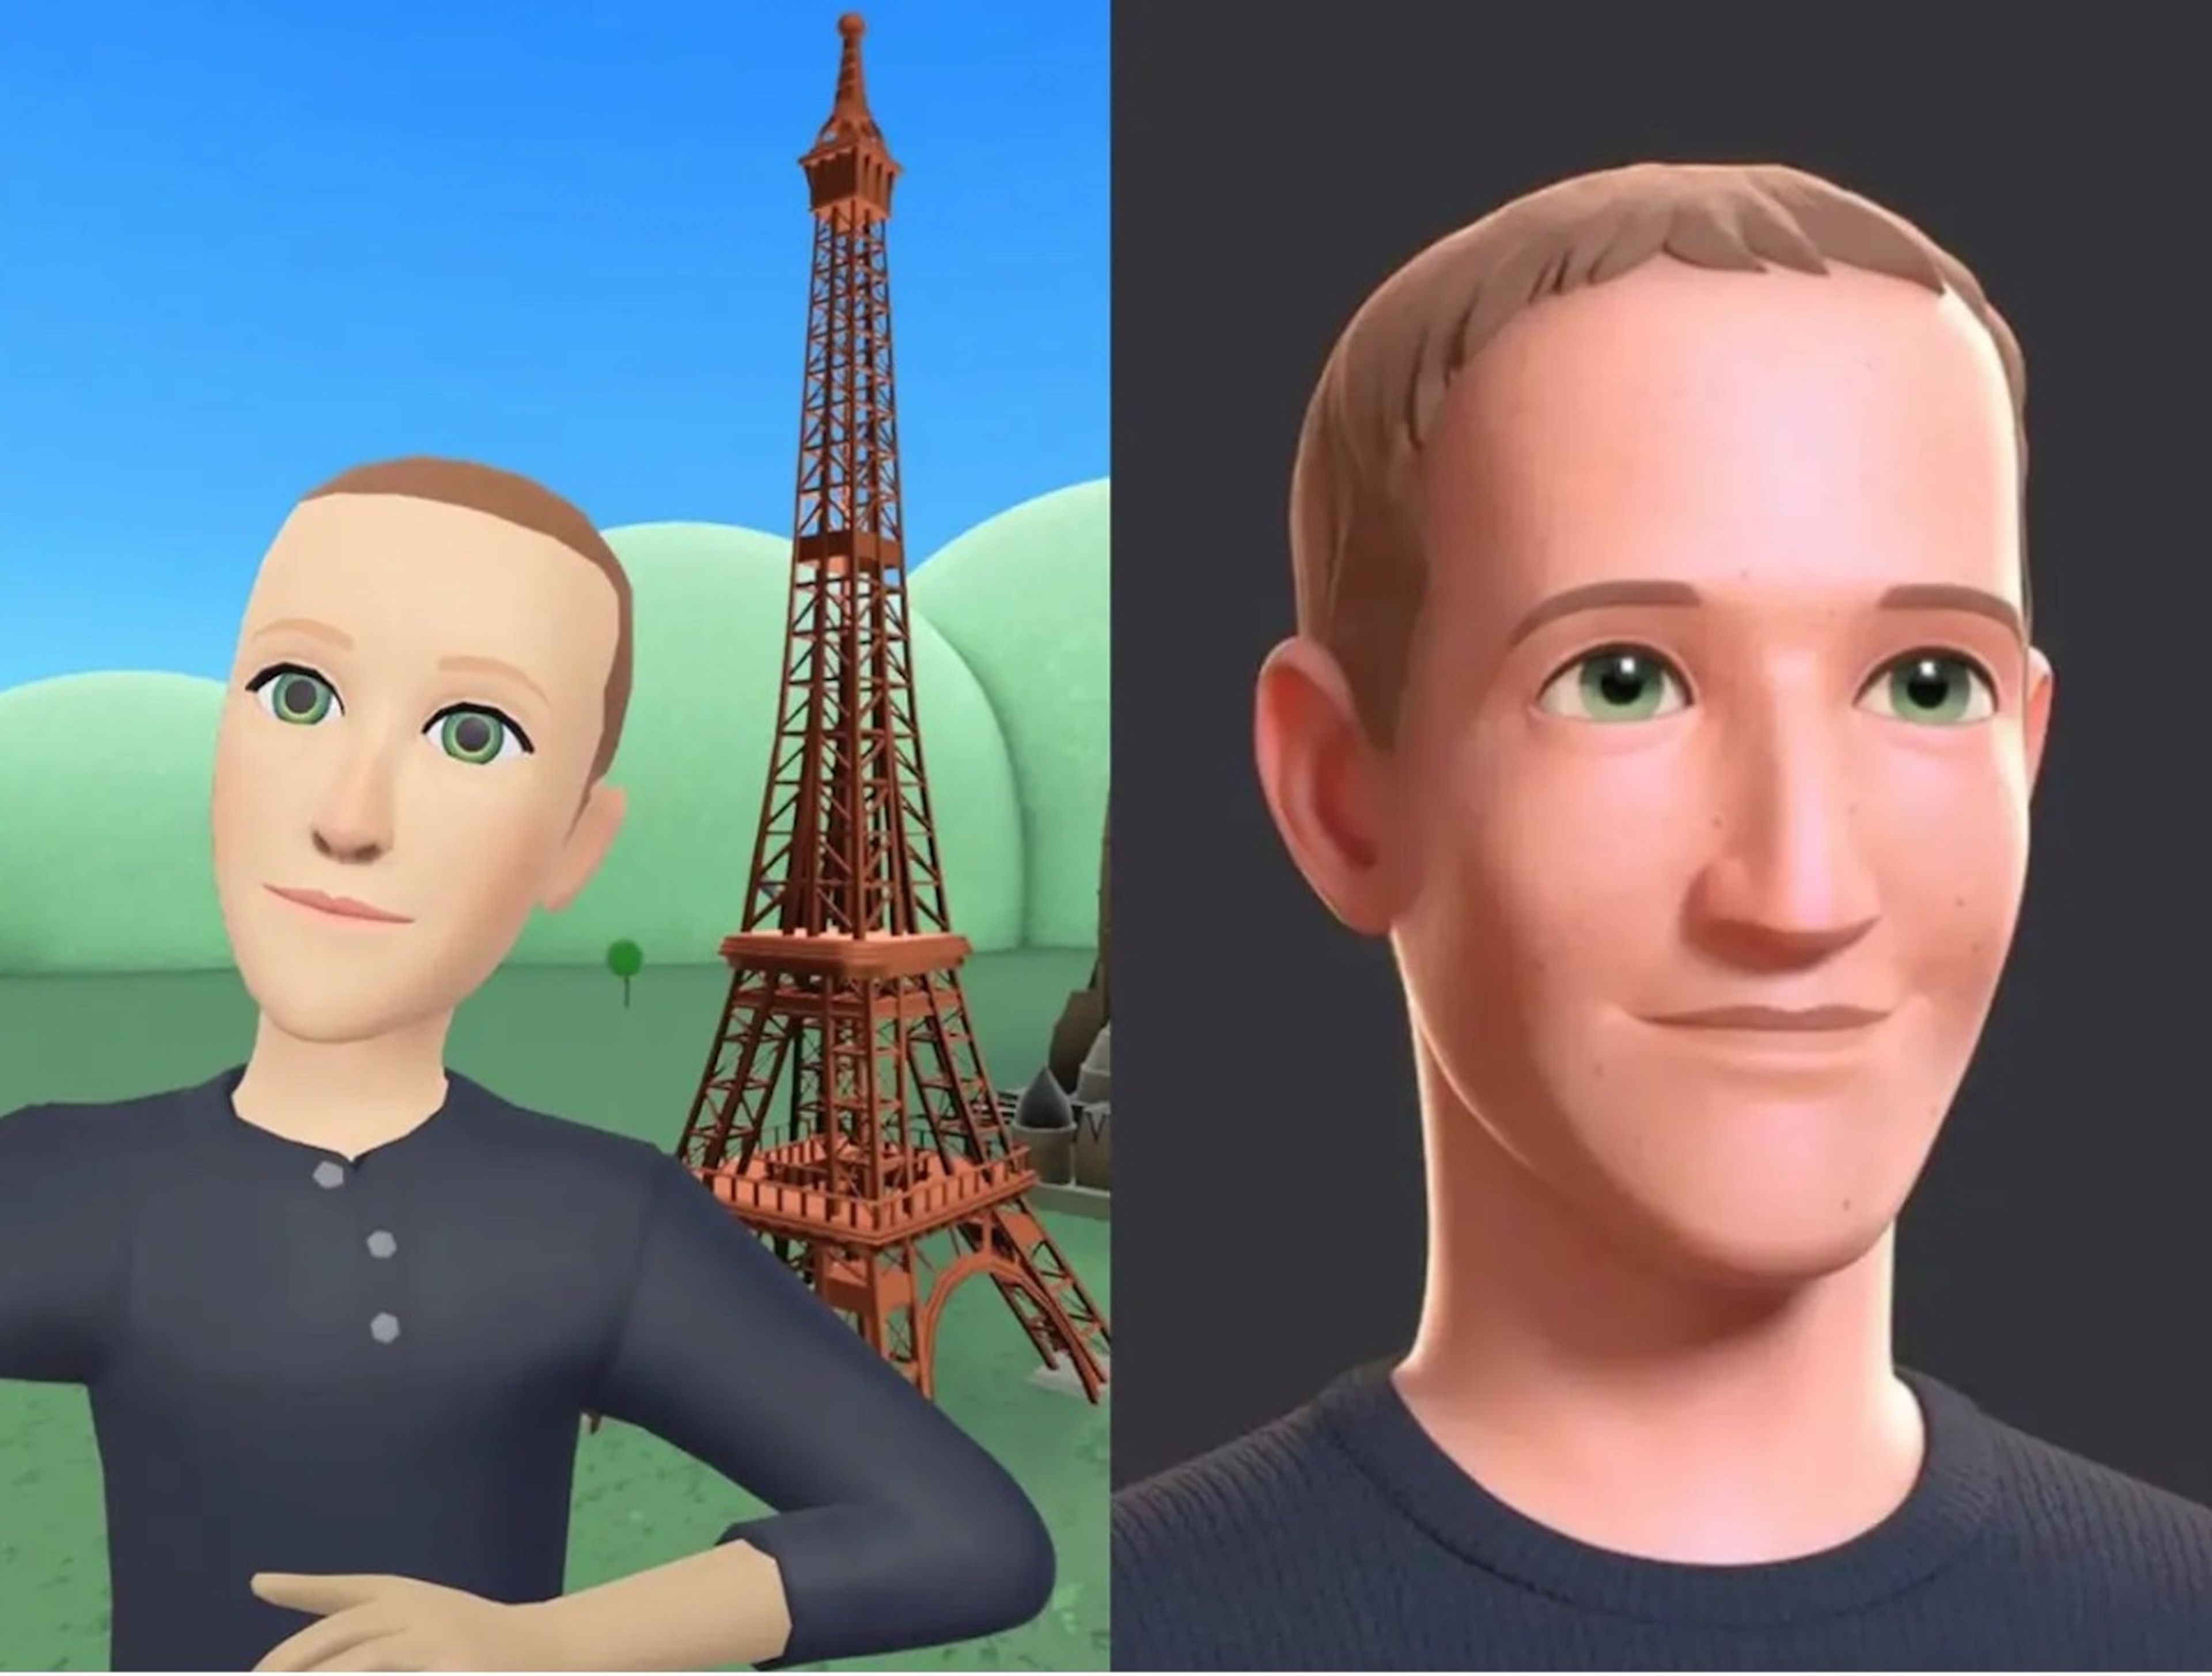 Avatar de Mark Zuckerberg el lunes; avatar de Mark Zuckerberg el viernes.